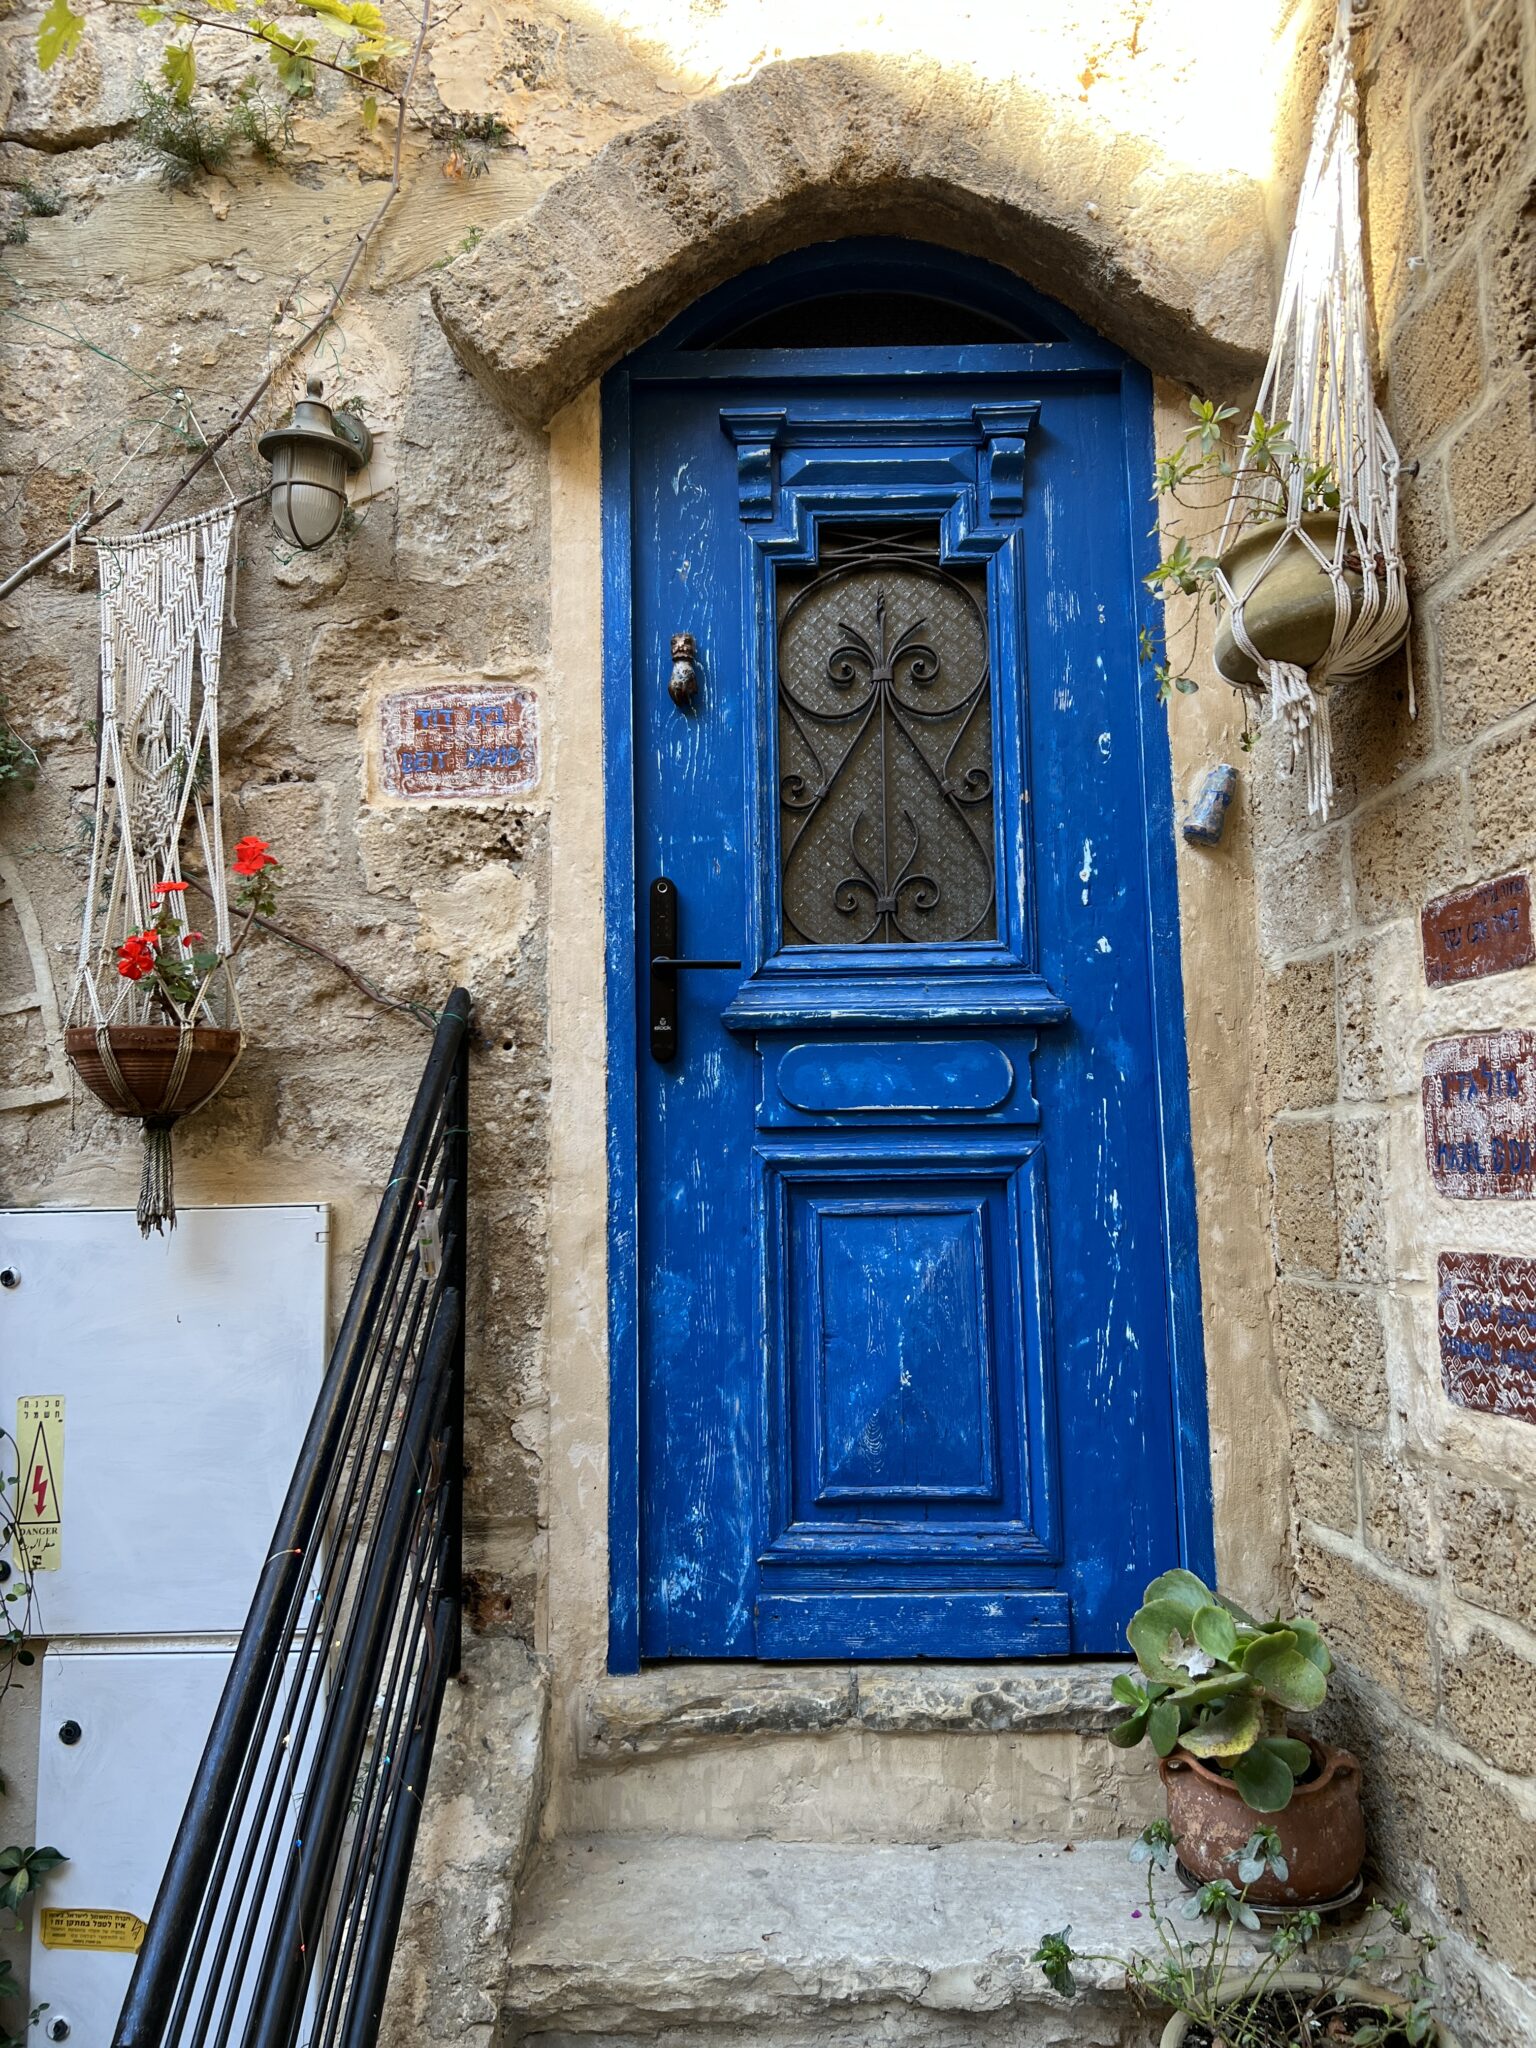 Old Jaffa, schöne blaue Tür in hellem Sandstein, daneben zwei Blumenkübel an der Wand und einer auf dem Boden, von oben strahlt die Sonne ins Bild